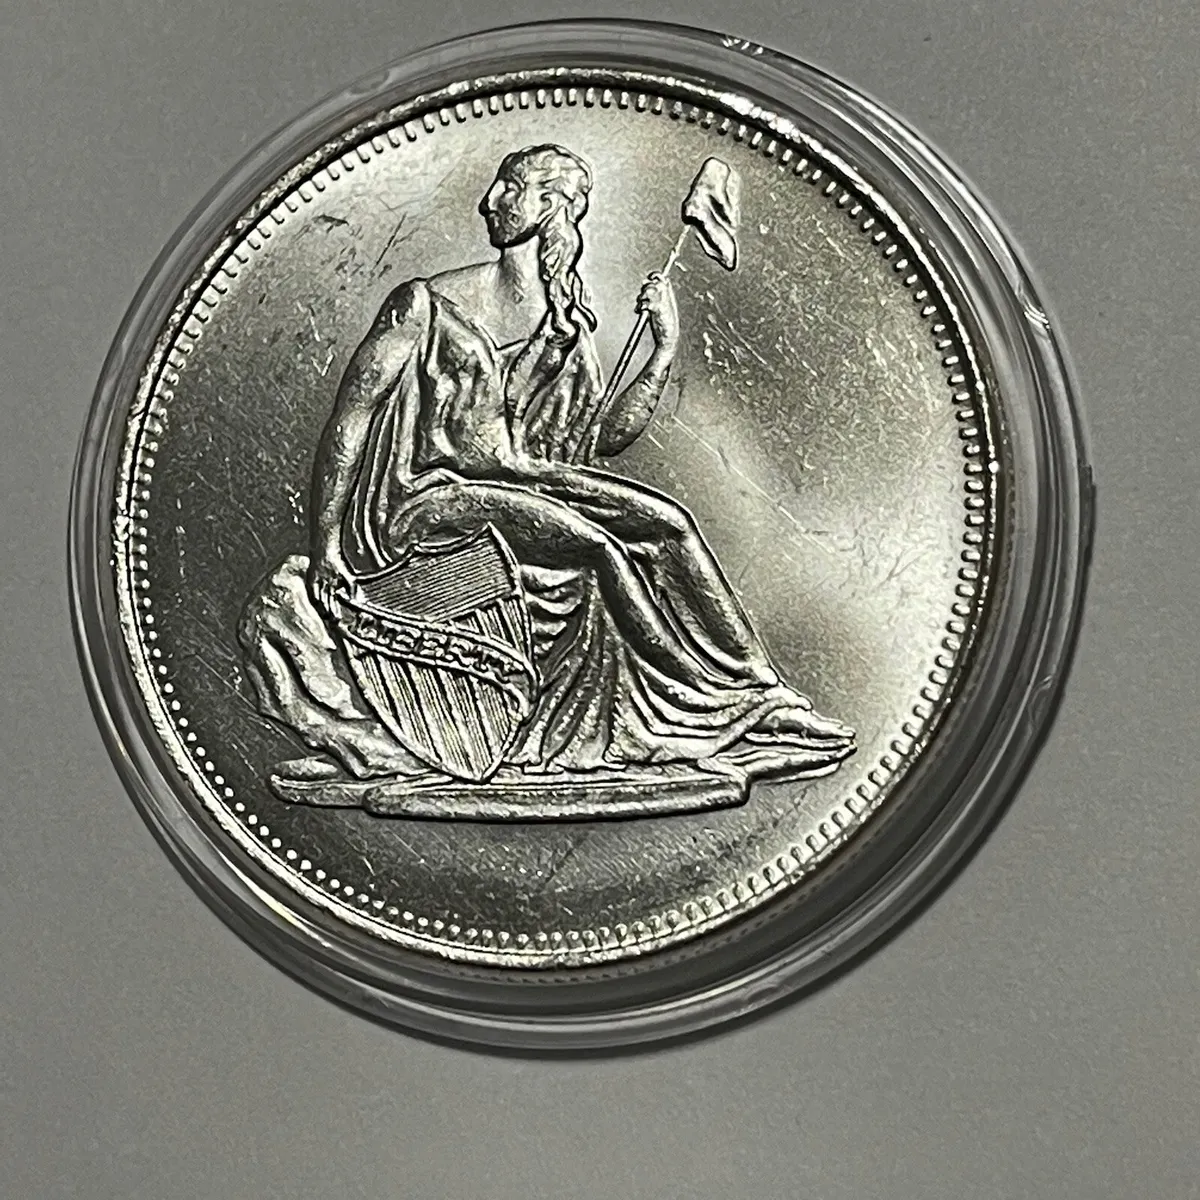 1 oz American Silver Eagle – The Truman Company